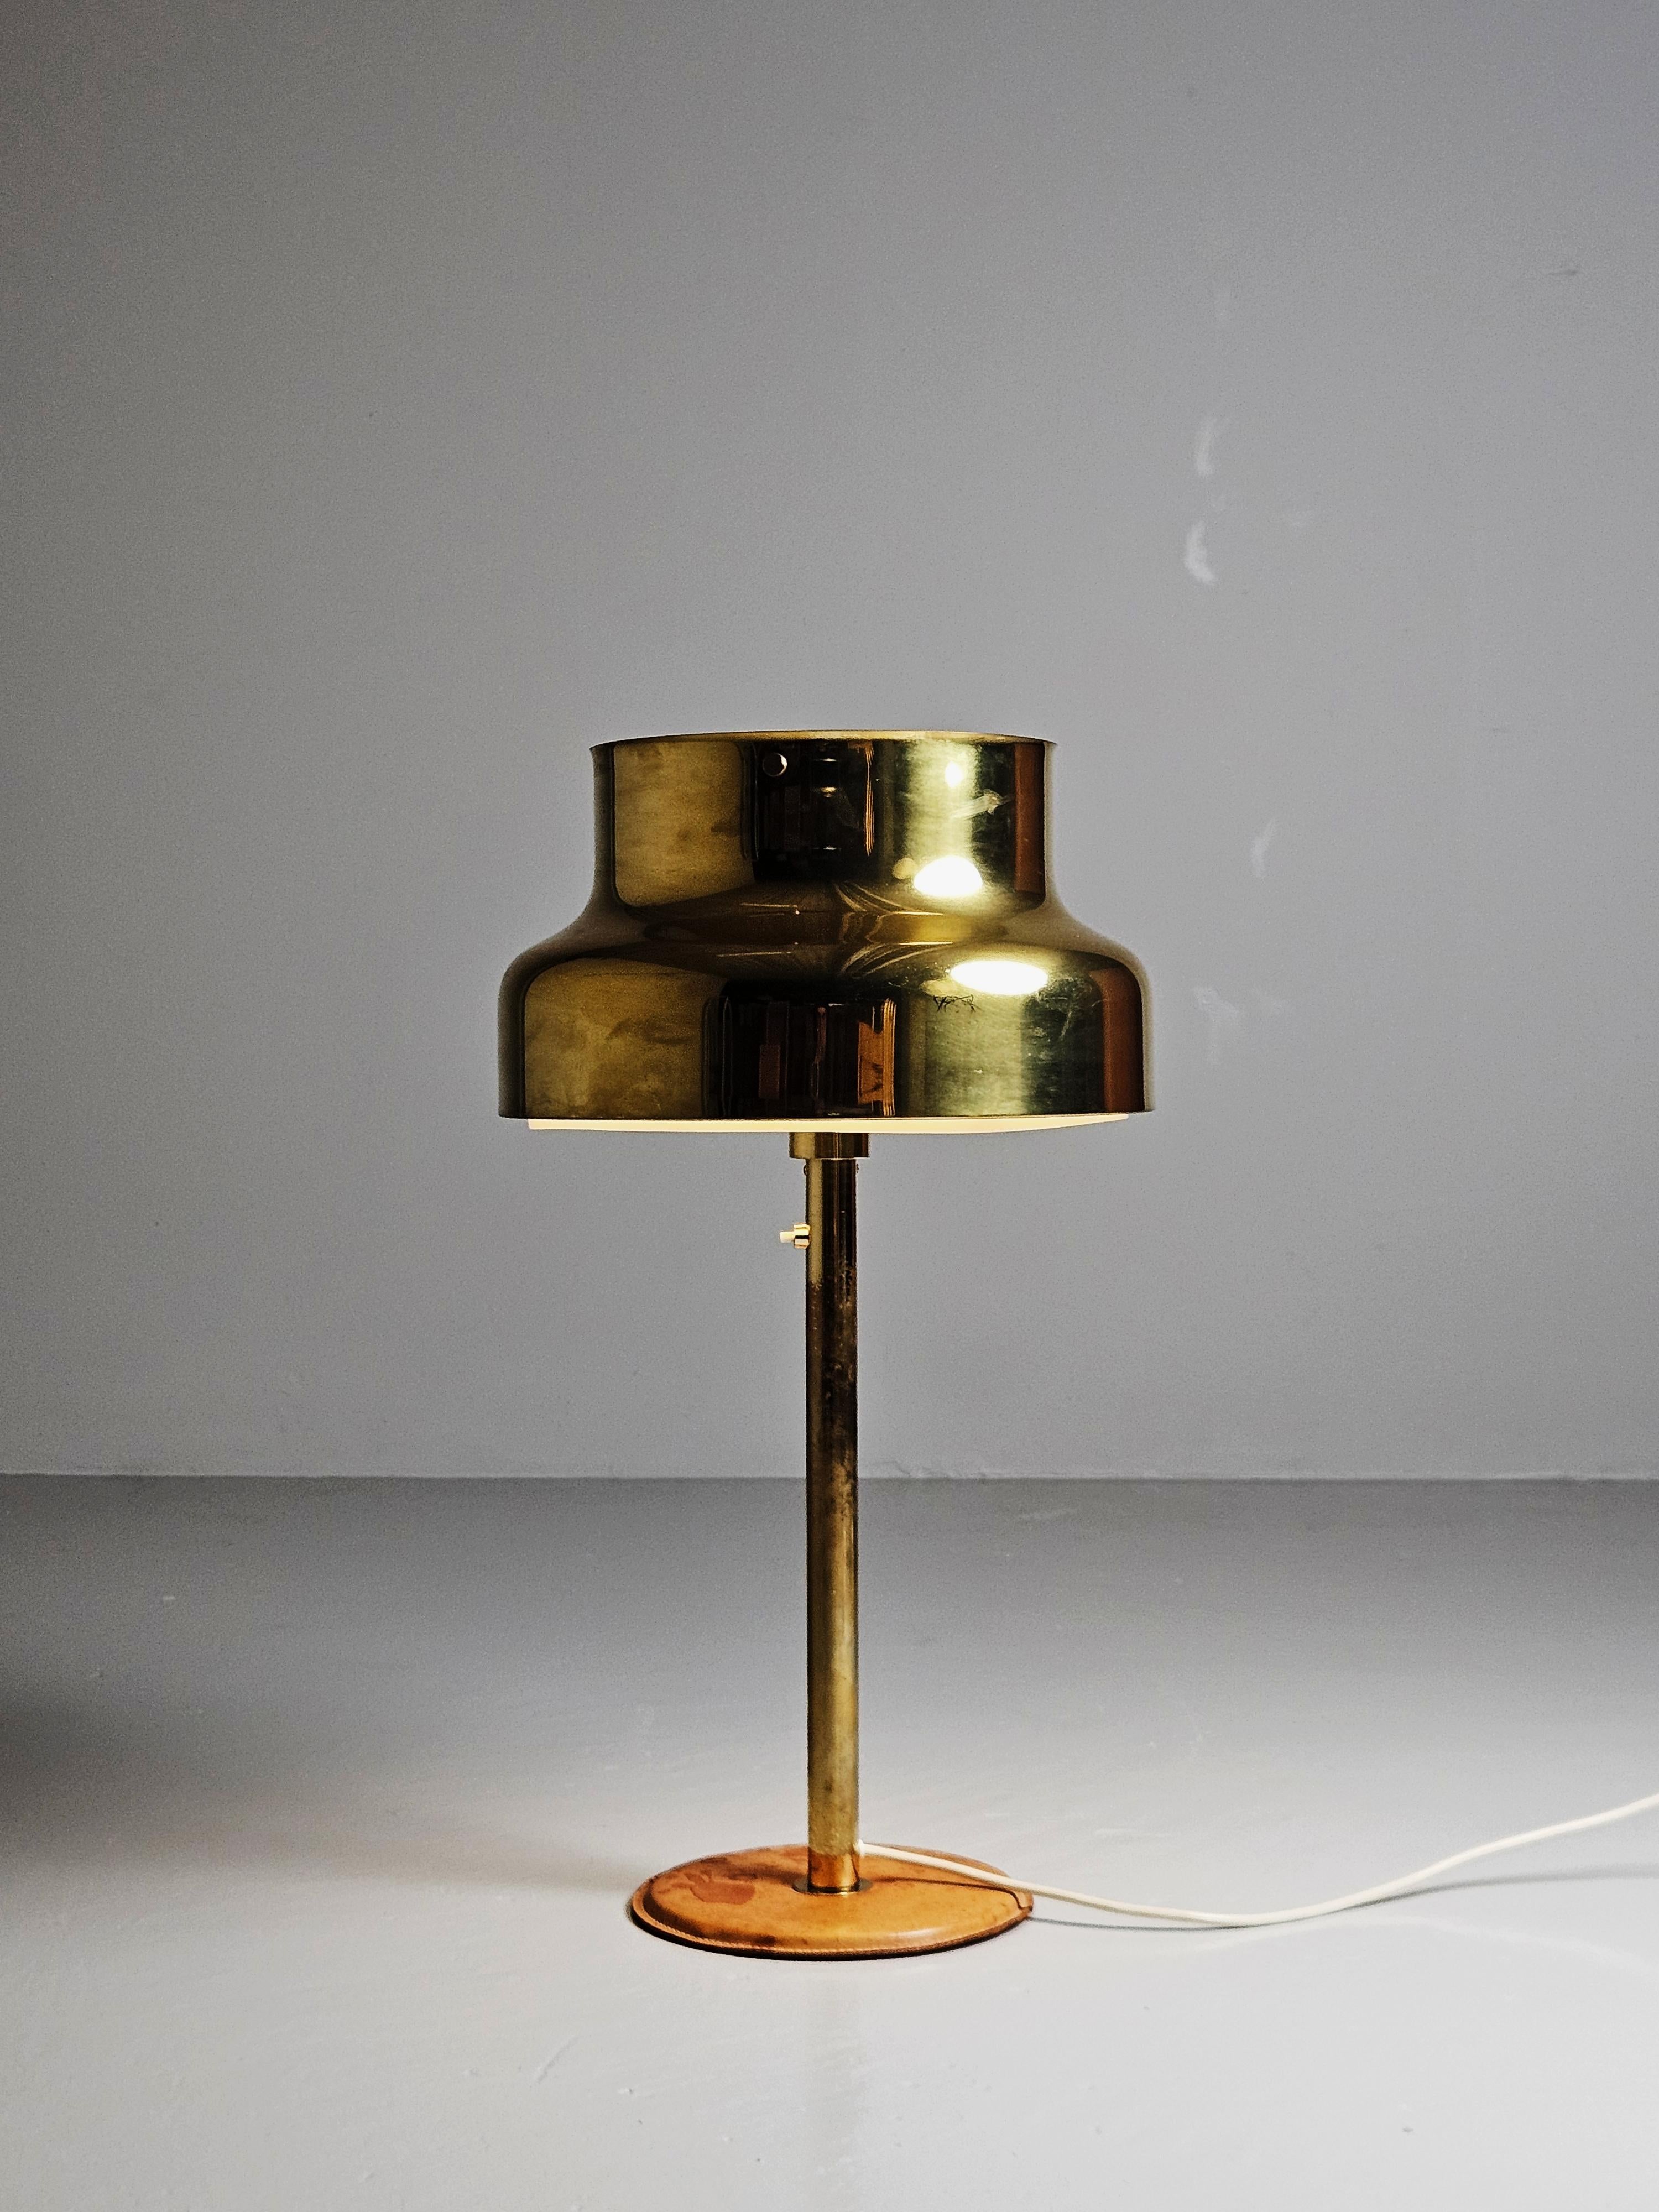 Magnifique lampe de table en laiton conçue par Anders Pehrson et fabriquée par Atlejé Lyktan, Suède, dans les années 1960. 

Bigli en laiton avec un pied en cuir. 